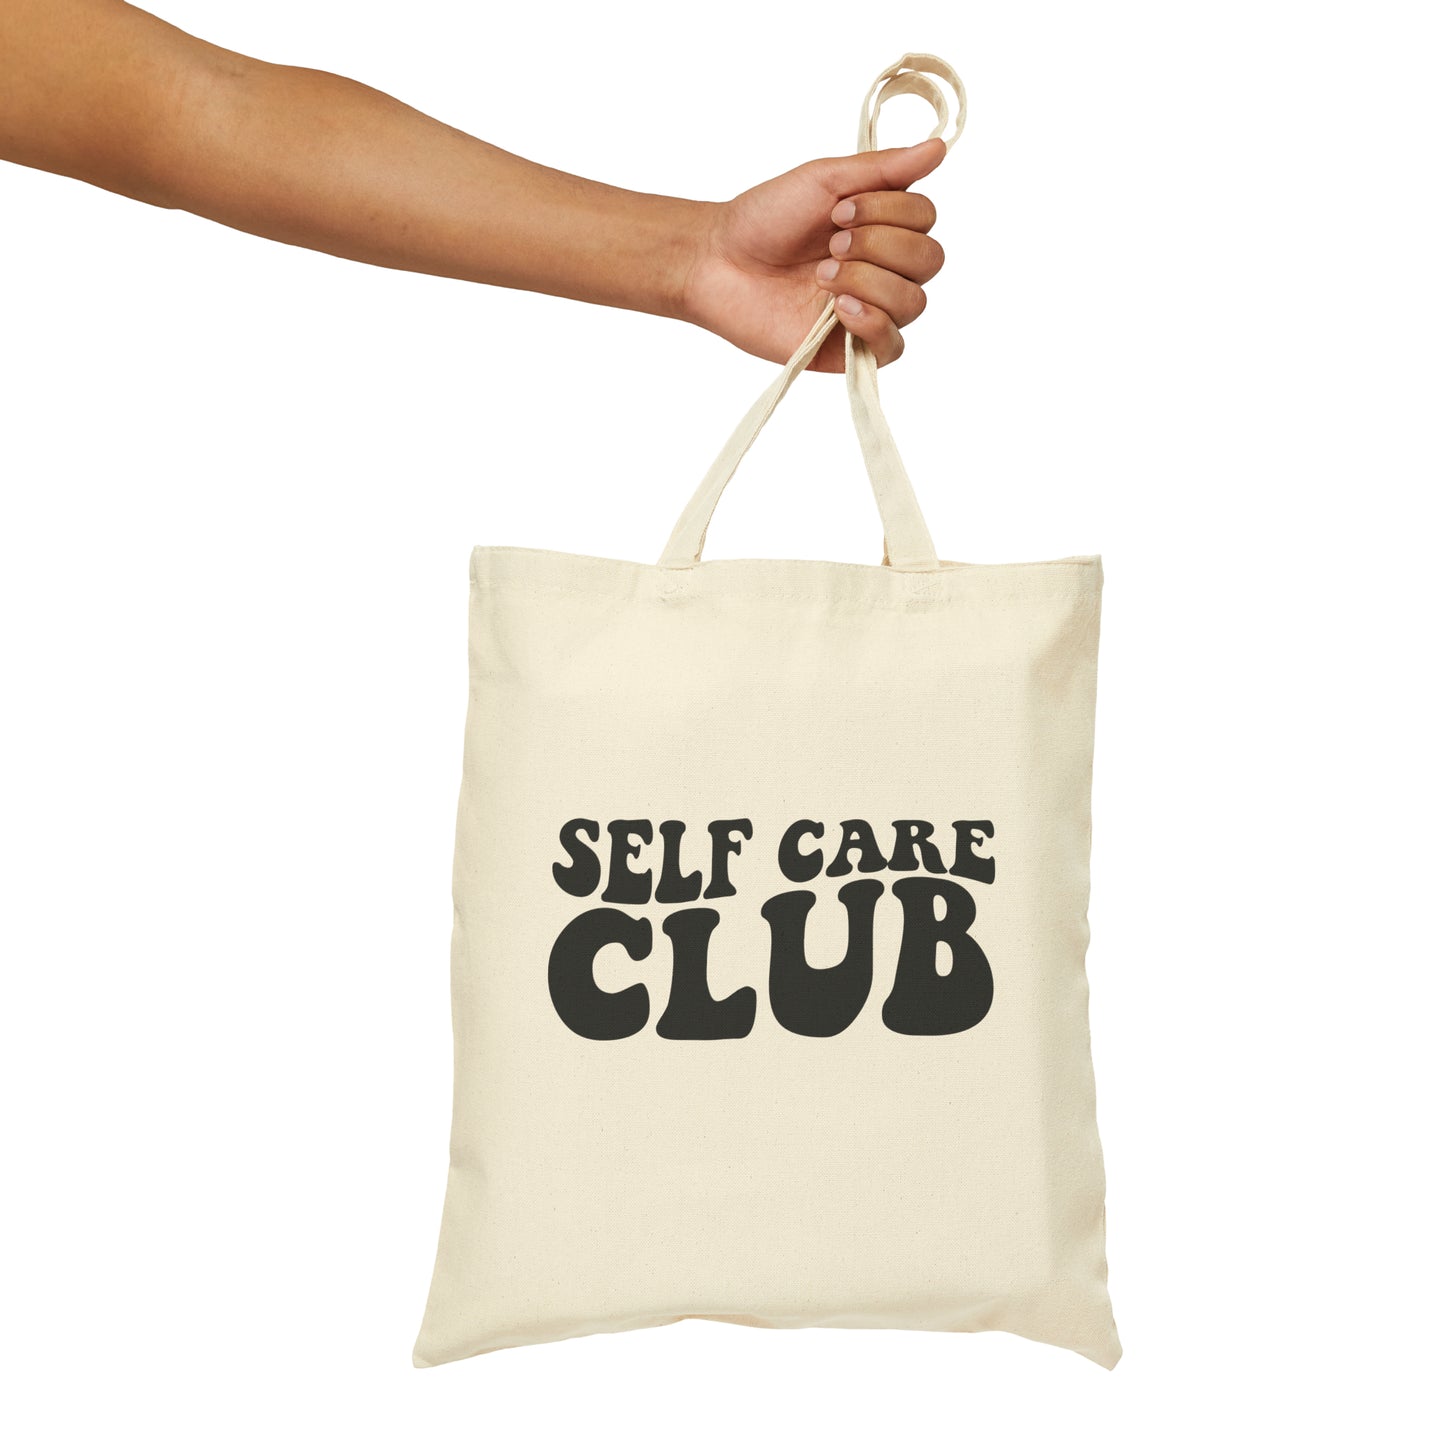 SELF CARE CLUB (Cotton Canvas Tote Bag)